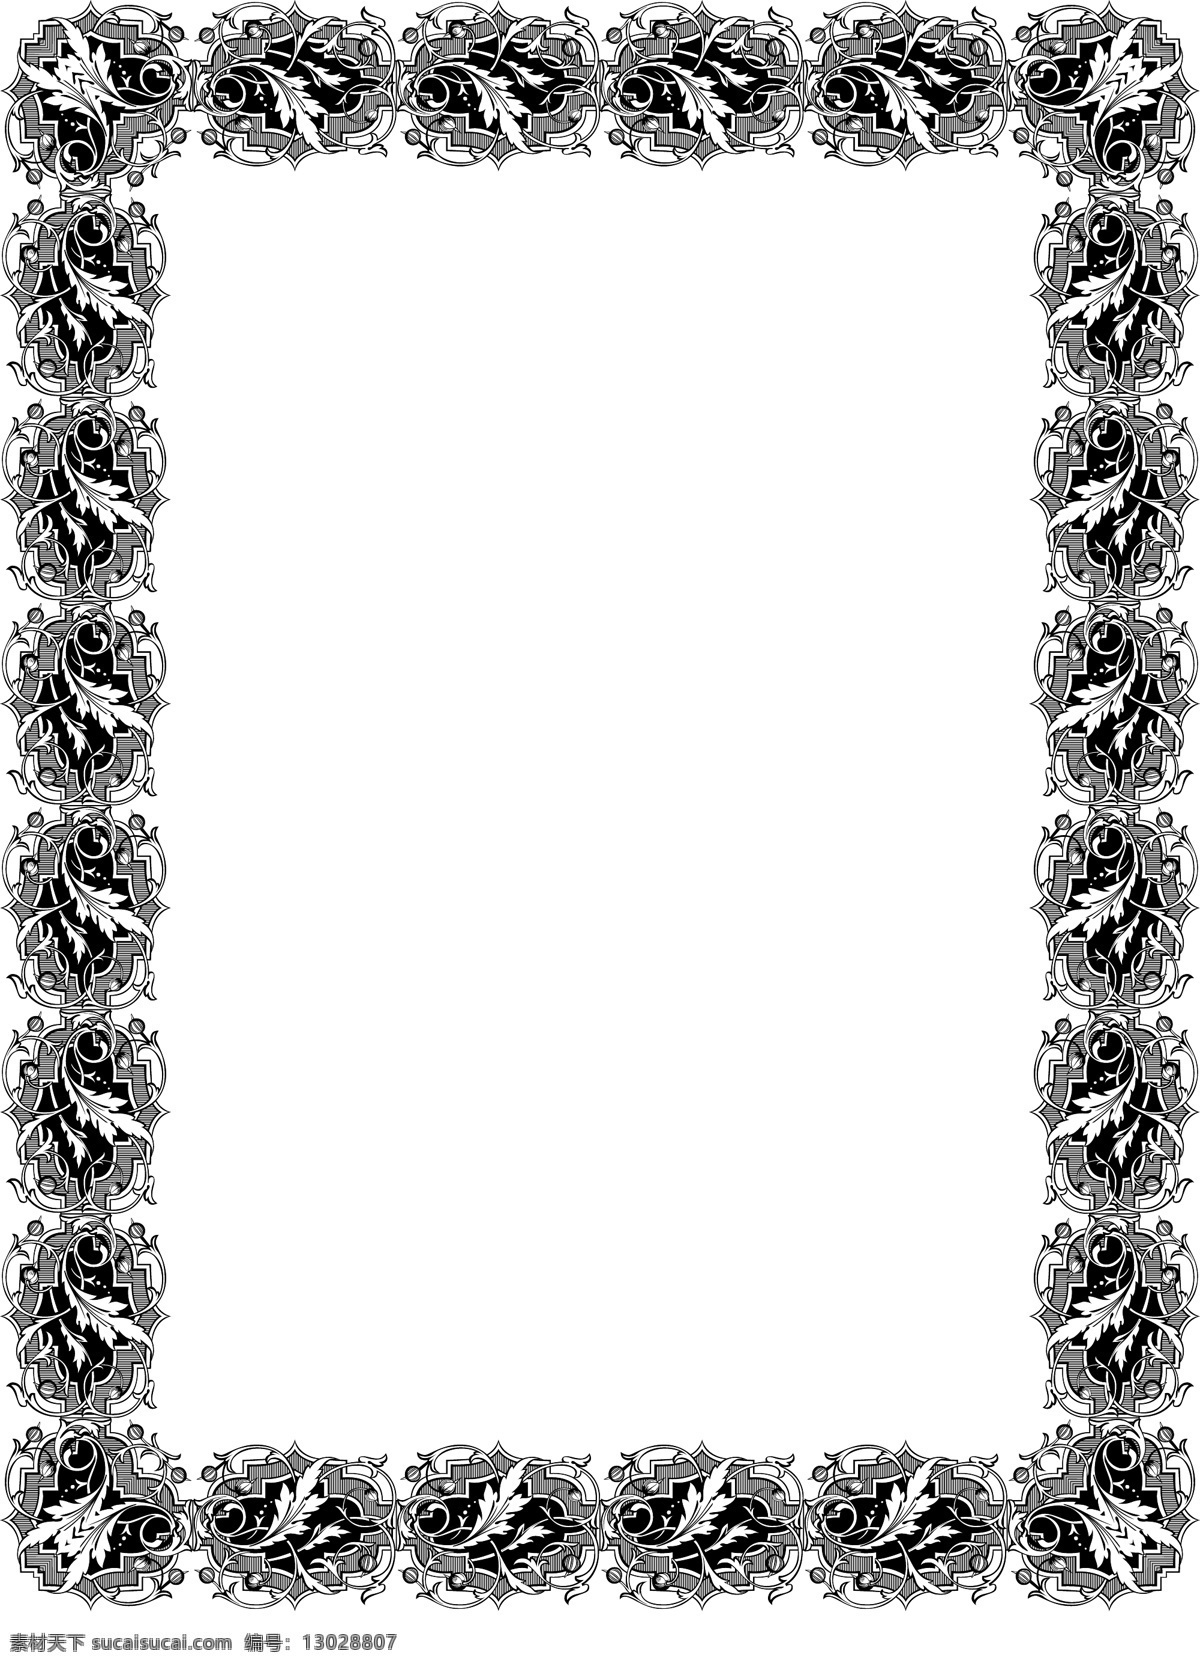 维多利亚 风格 花边 黑白 花团 精致 叶子 植物 维多利亚风格 民族风味 西式花边花纹 矢量图 花纹花边